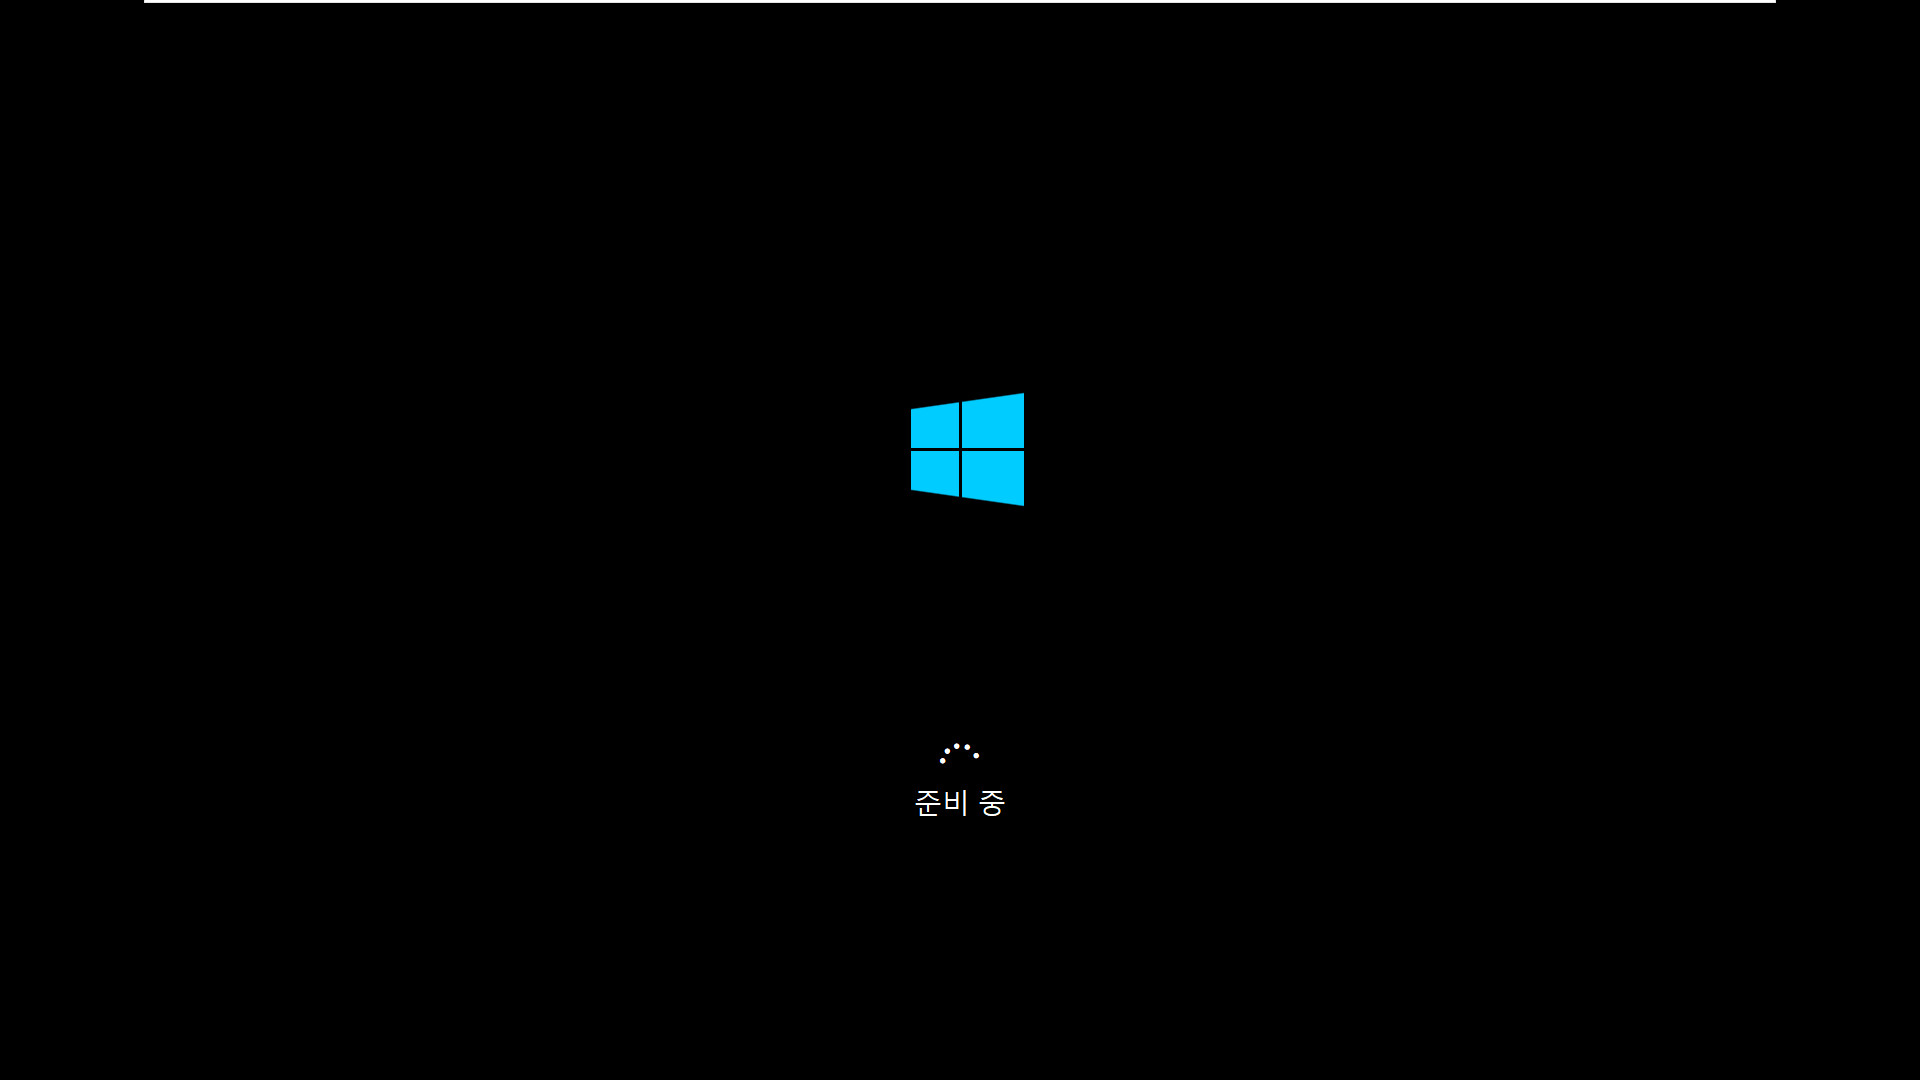 3.Kong_Windows10_v2009_19042.610_x64.vhd 에 Imagew64.exe 으로 복구하여 부팅 테스트 2020-11-07_223026.jpg